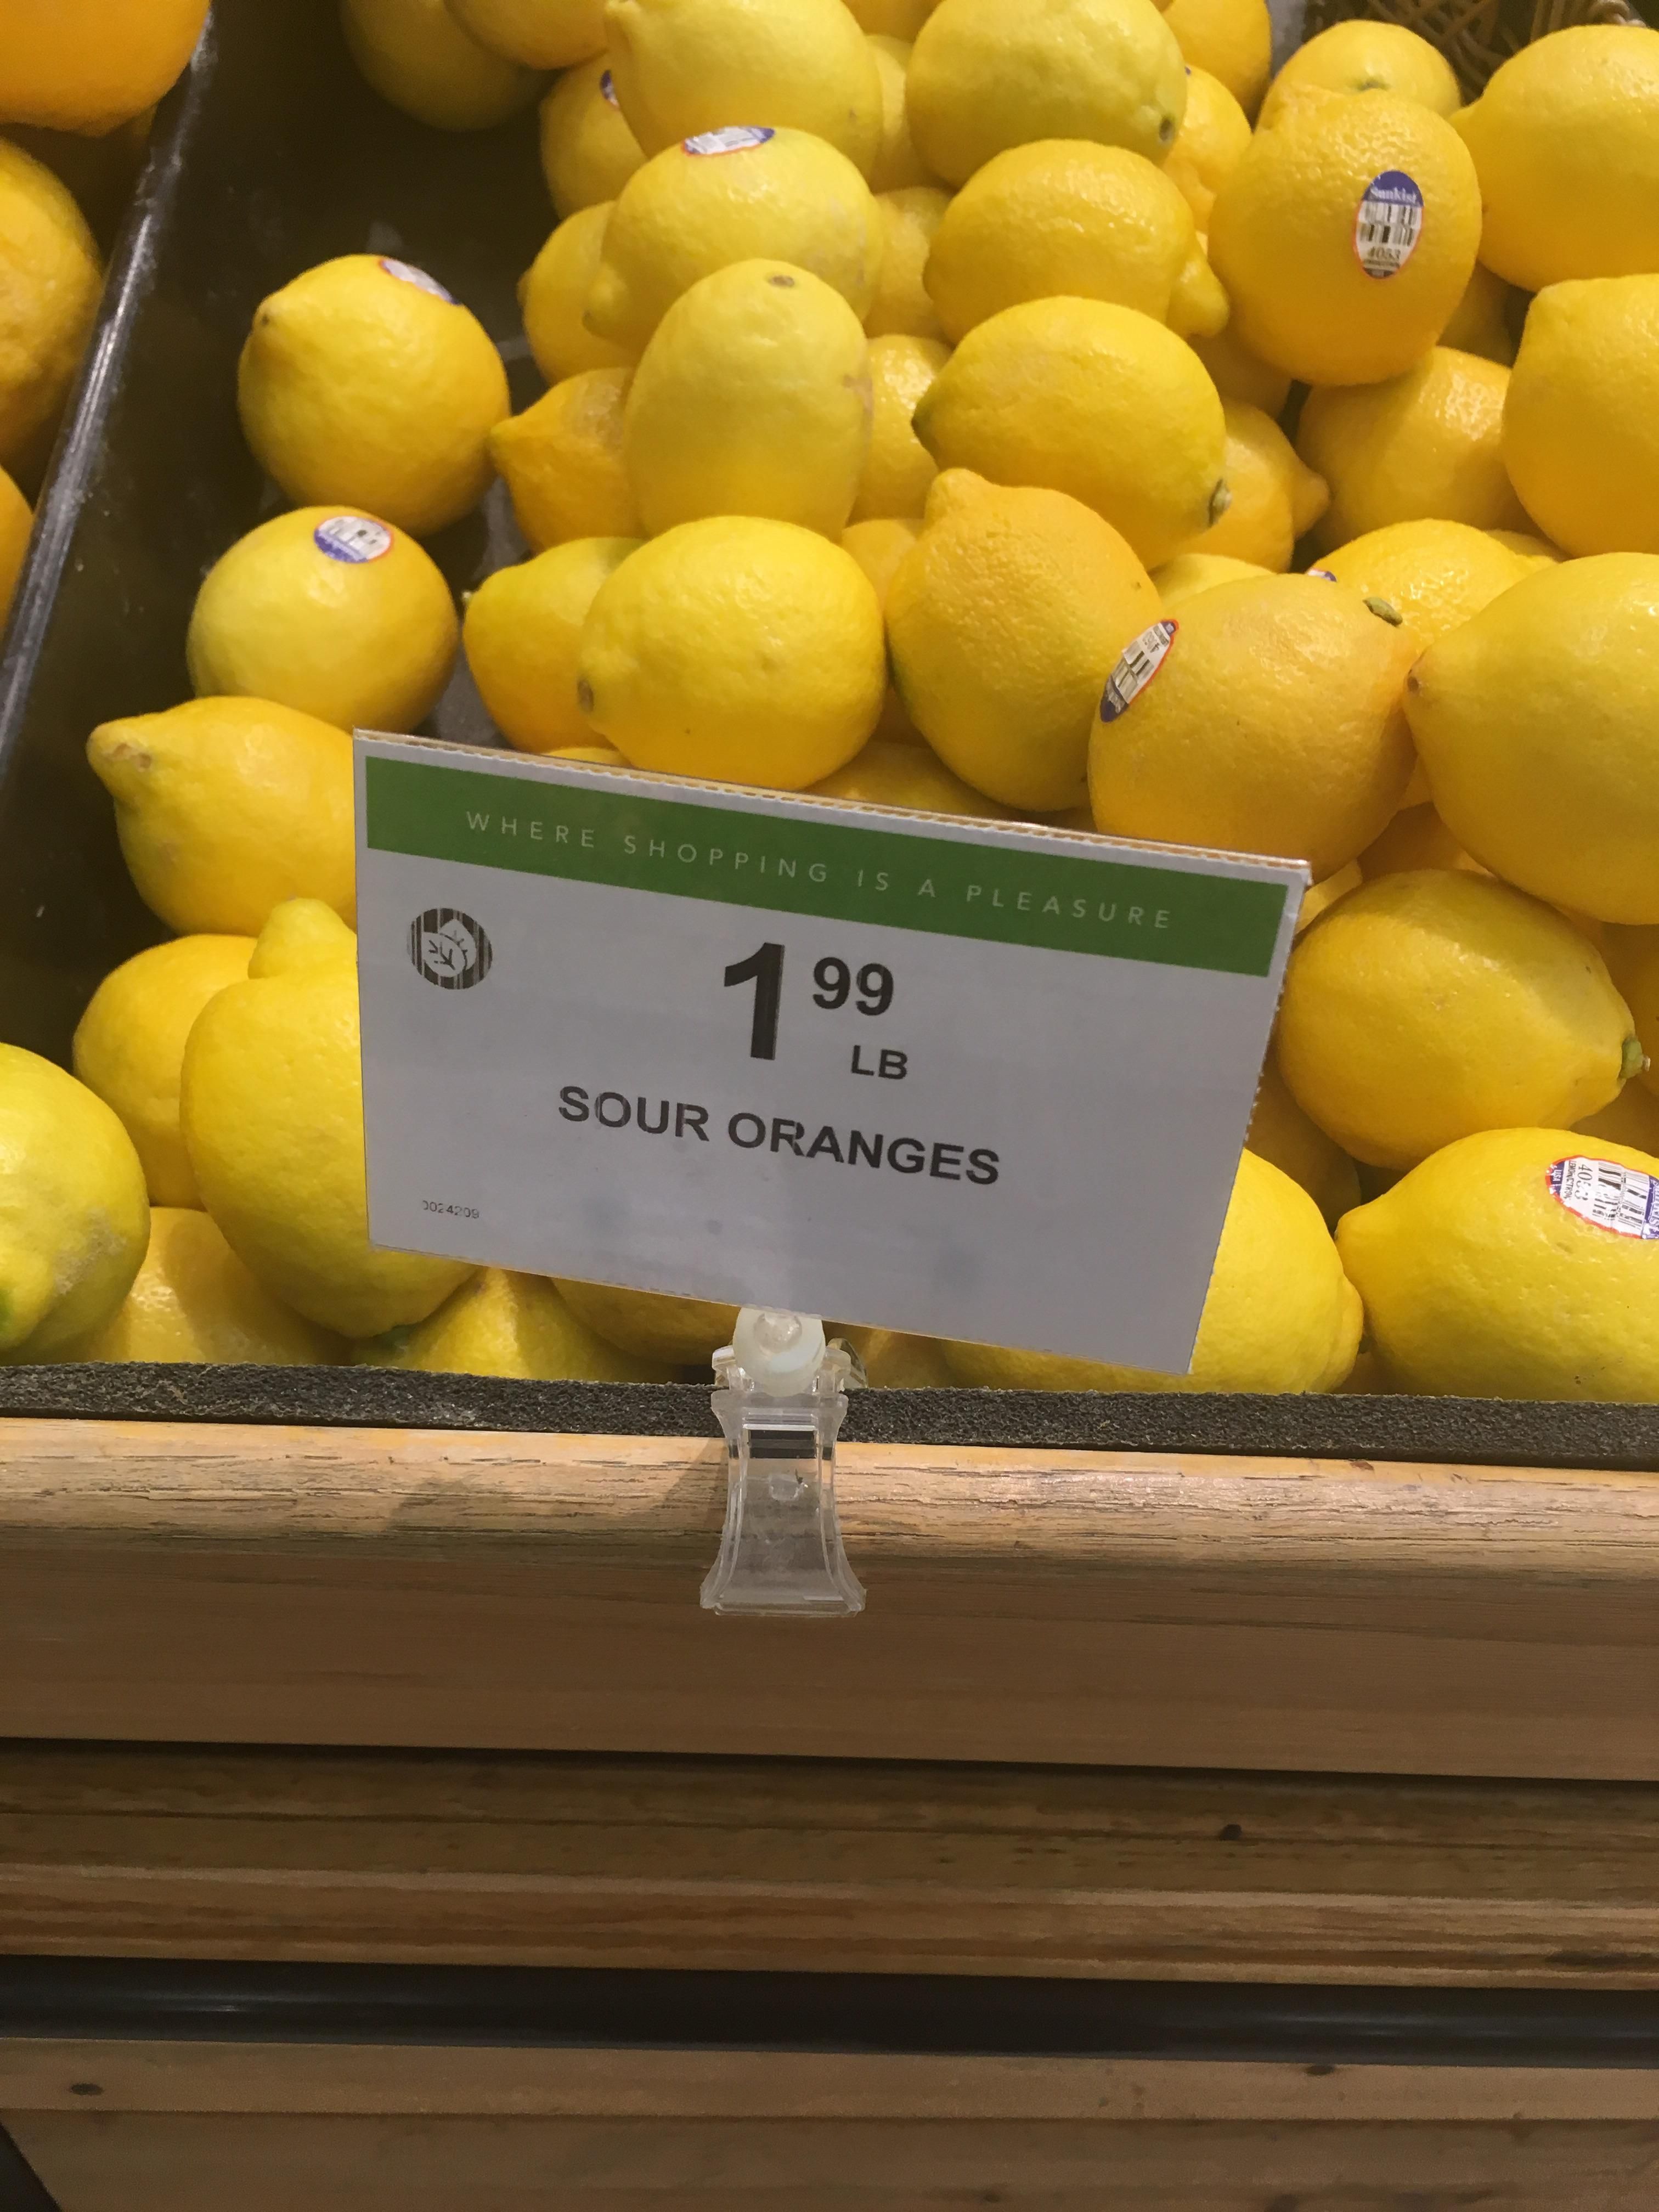 Lemons? More like